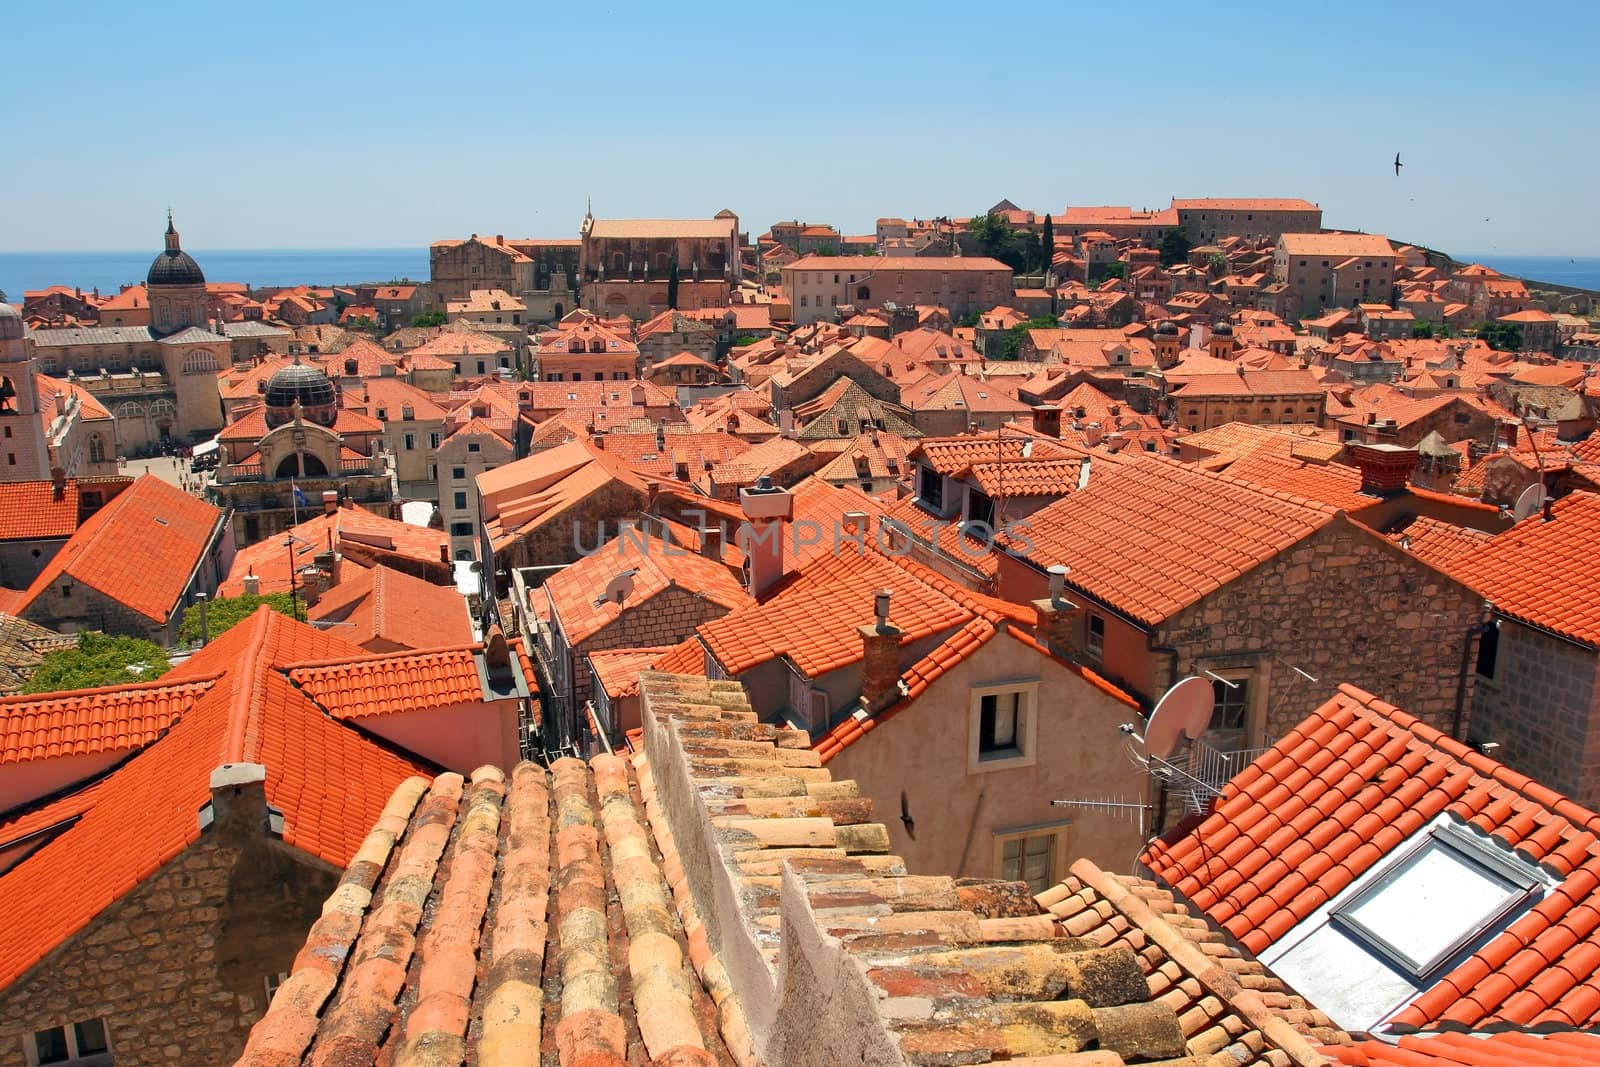 Old orange roof tiles from Dubrovnik